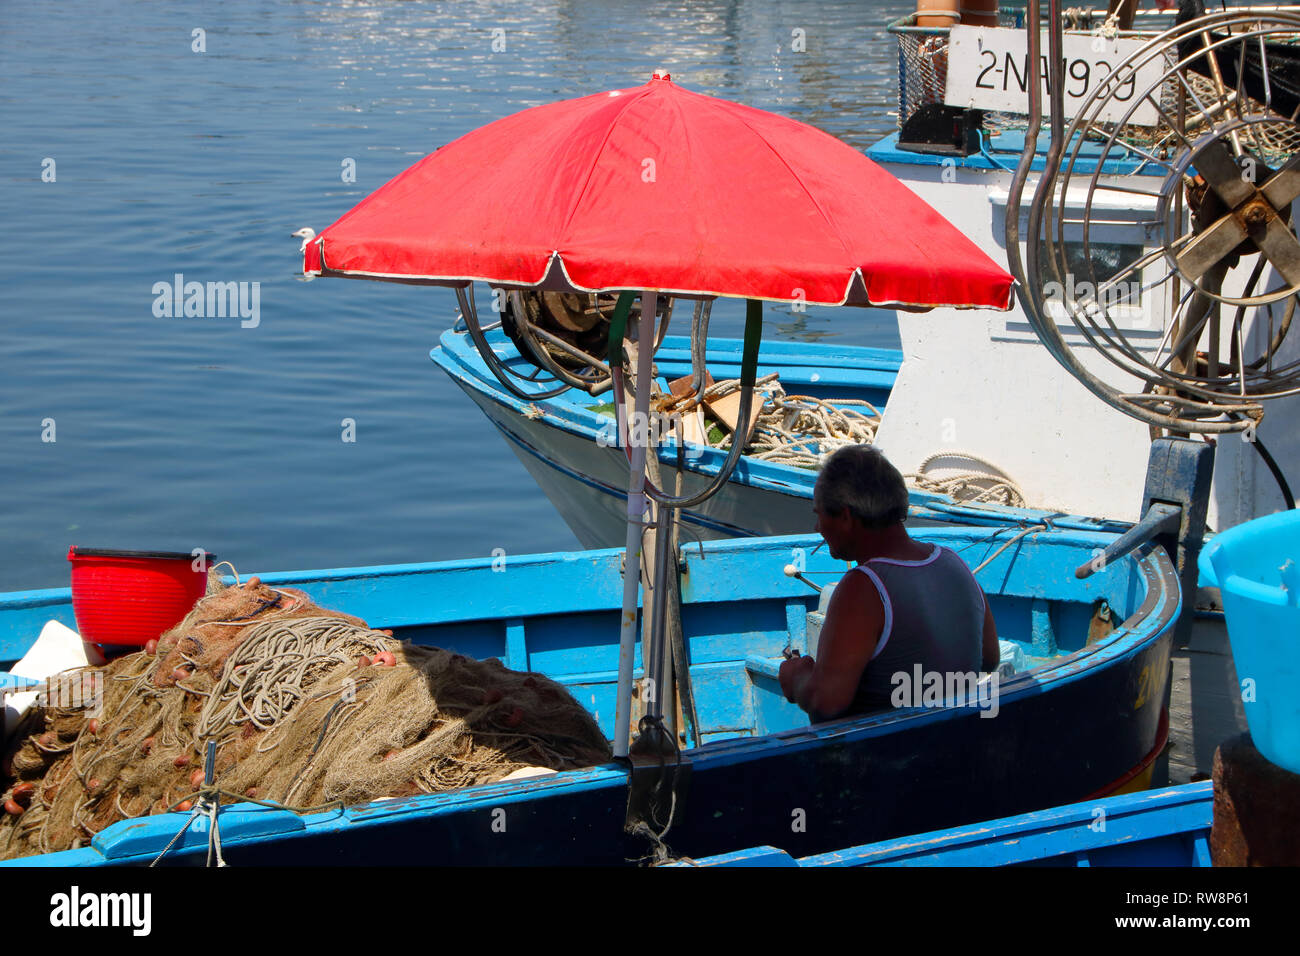 En Pozzuoli, Italia, en junio, 04/2018 - el viejo pescador en su barco azul woth una sombrilla roja en verano Foto de stock